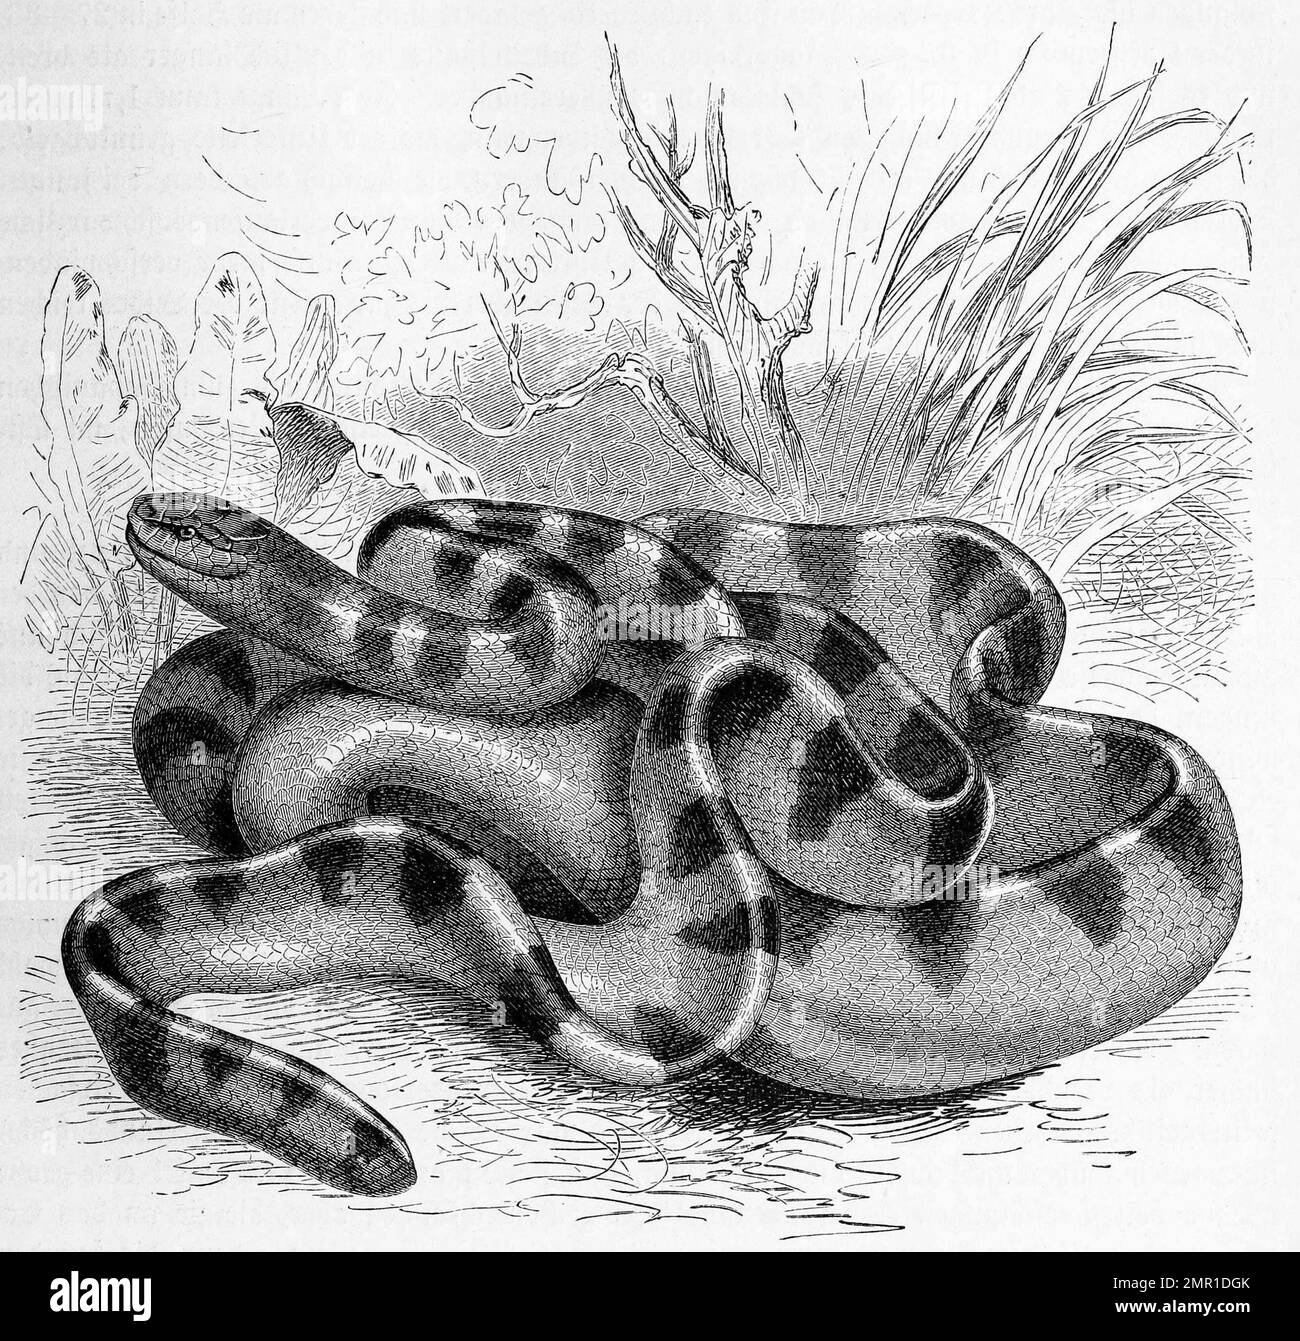 Reptilien, Streifenruderschlange, Hydrophis cyanocinctus zählt innerhalb der Familie der Giftnattern, Elapidae zu den Seeschlangen, Historisch, digital restaurierte Reproduktion von einer Vorlage aus dem 19. Jahrhundert Foto Stock